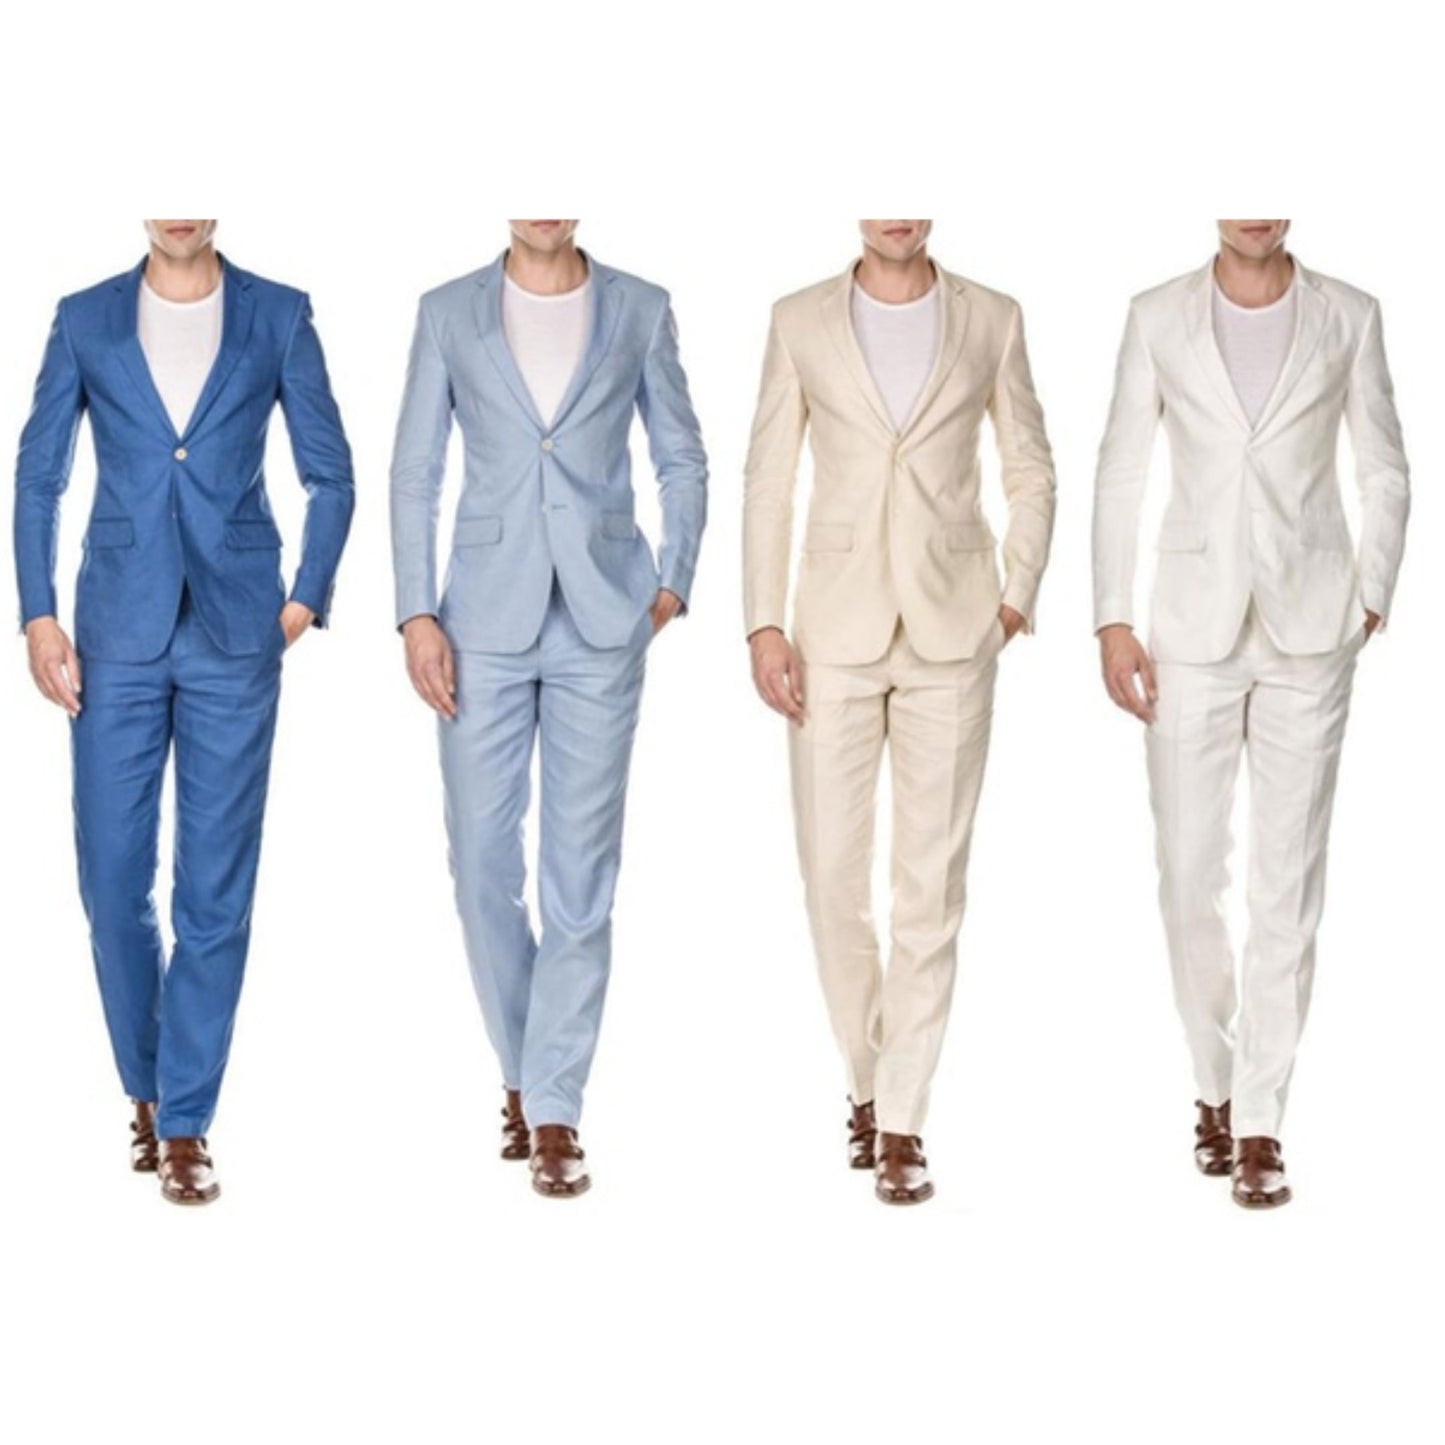 Linen Light Blue Two Piece Suit